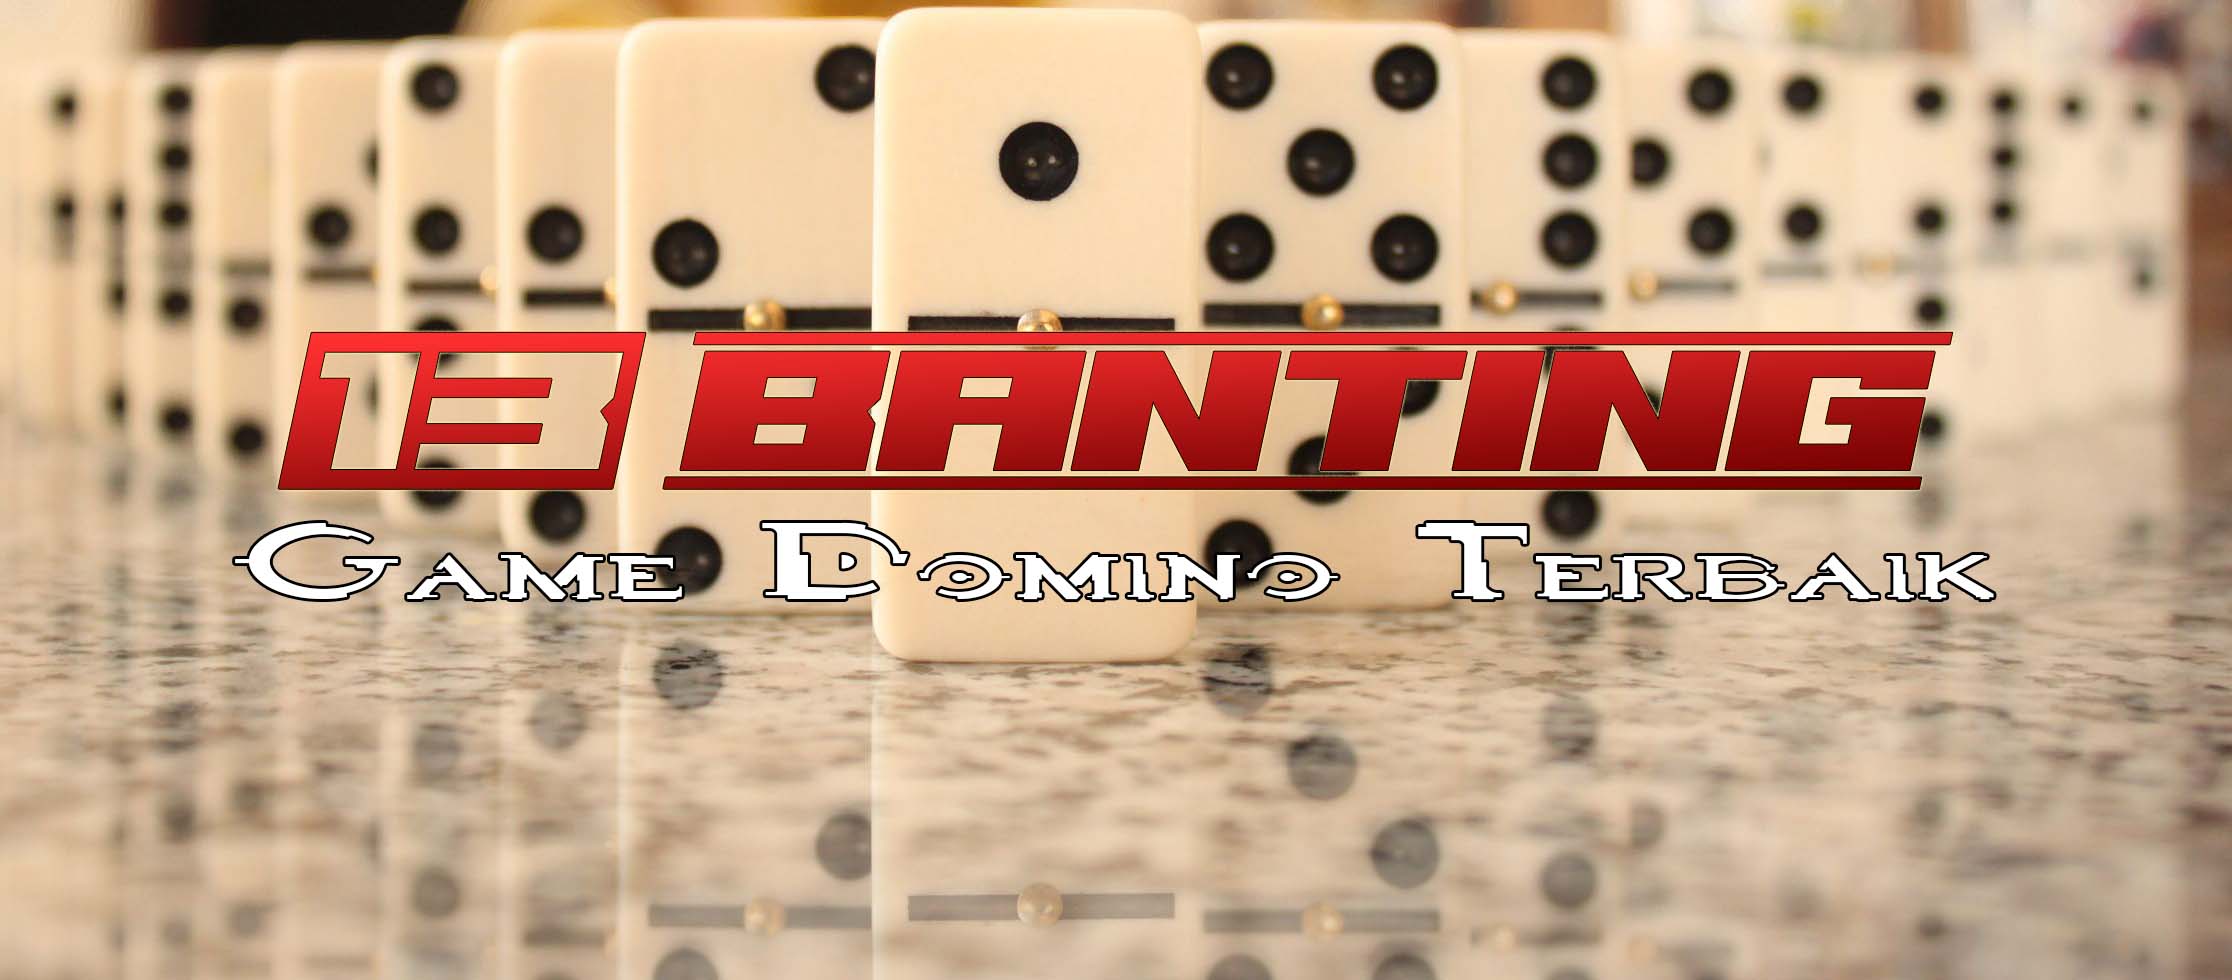 Game Domino Terbaik Untuk Android Di Indonesia - Game - HD Wallpaper 